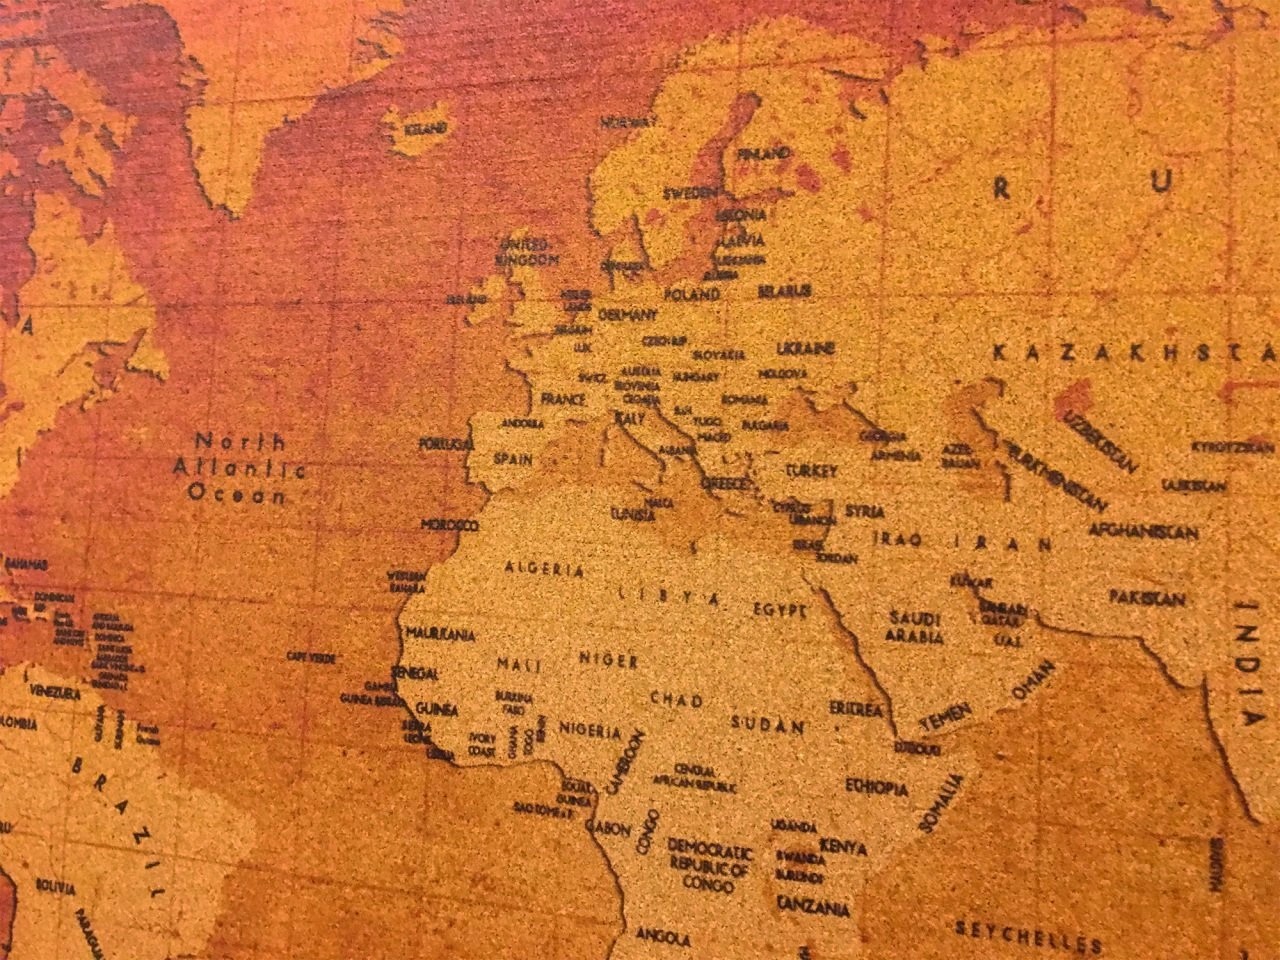 105 - Cork World Map - Vintage Model